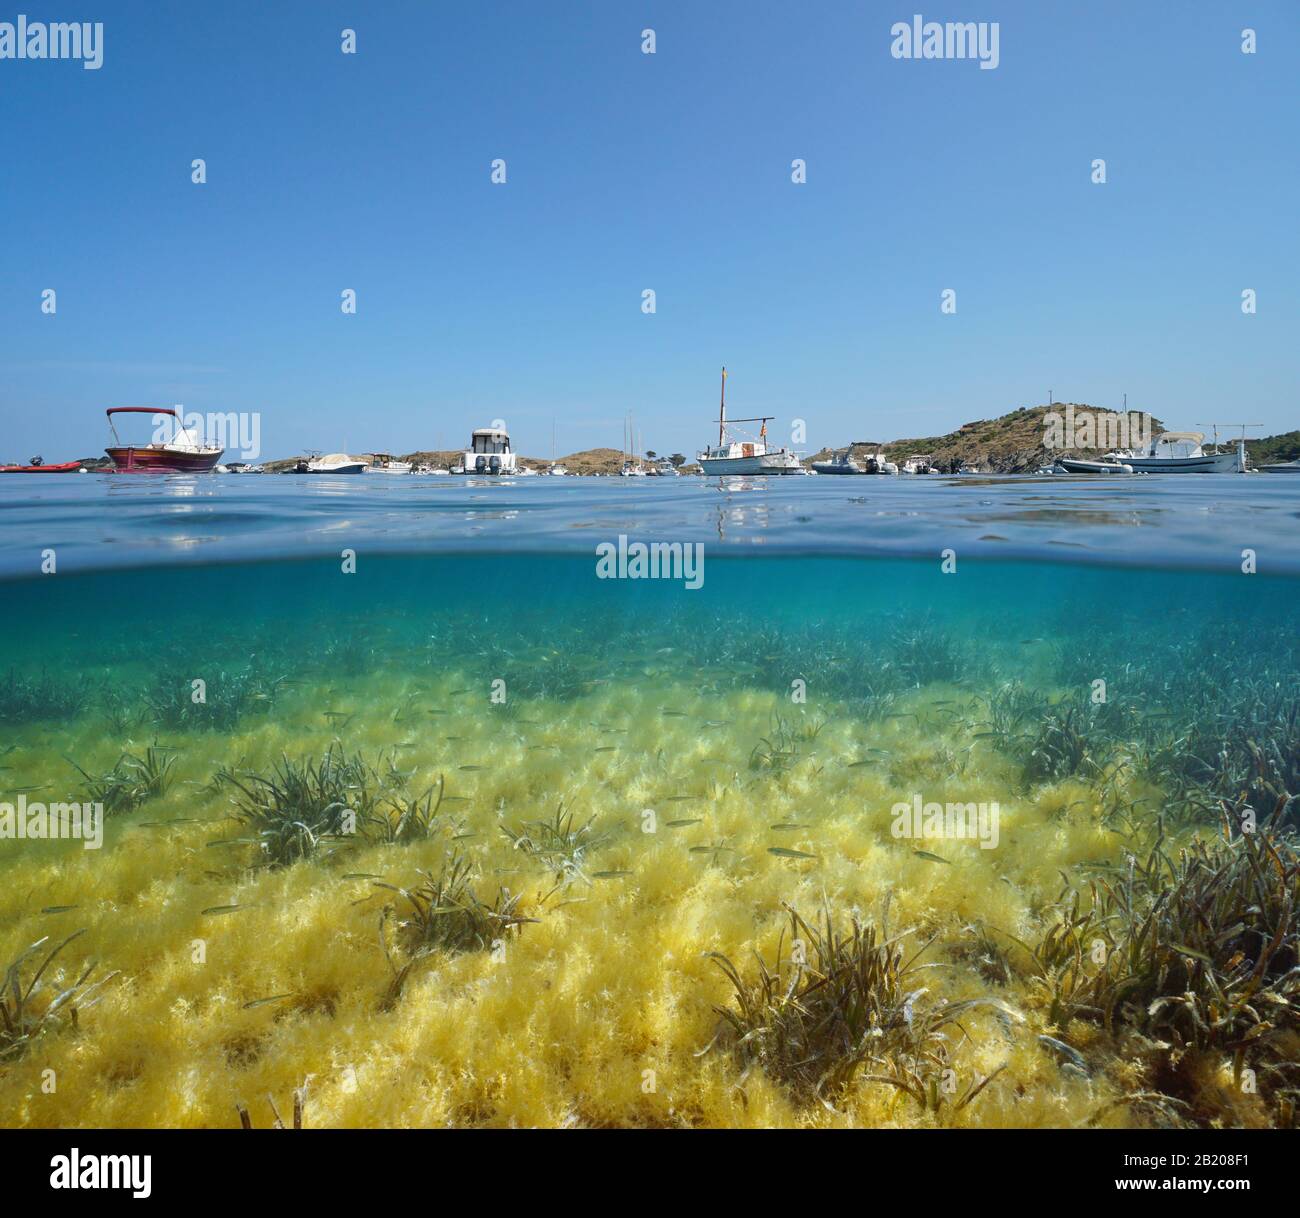 Espagne Méditerranée, bateaux amarrés dans la baie de Port Lligat et petits poissons avec algues et de la mer sous l'eau, vue partagée sur et sous la surface de l'eau Banque D'Images